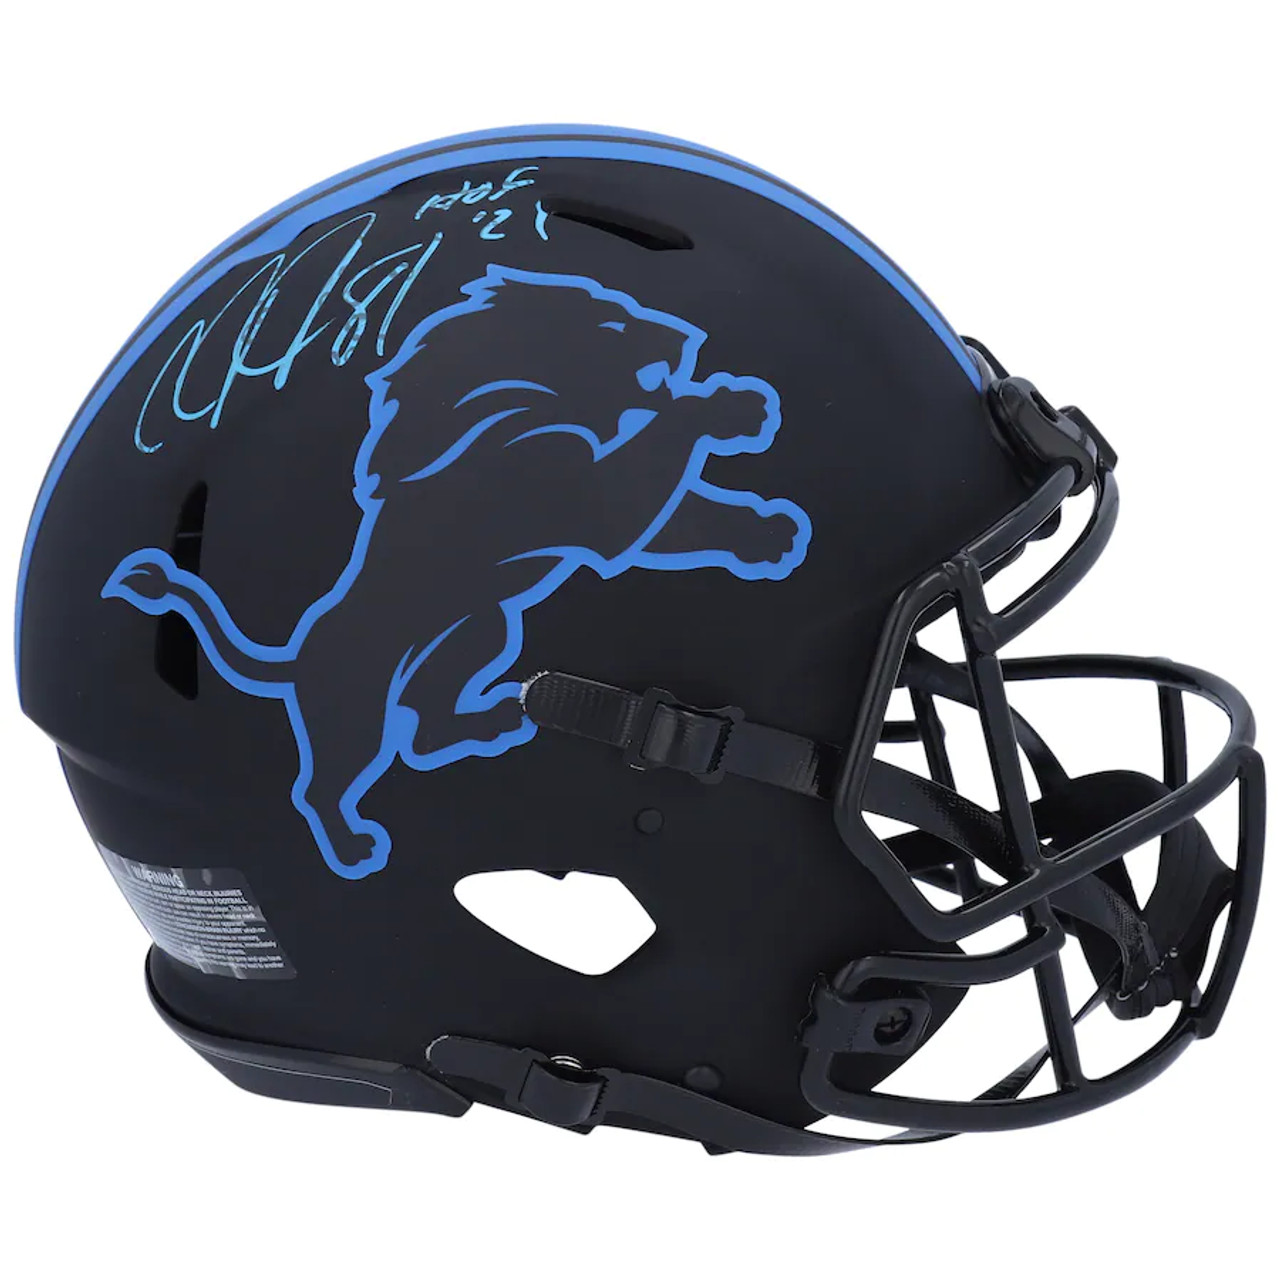 lions new helmets